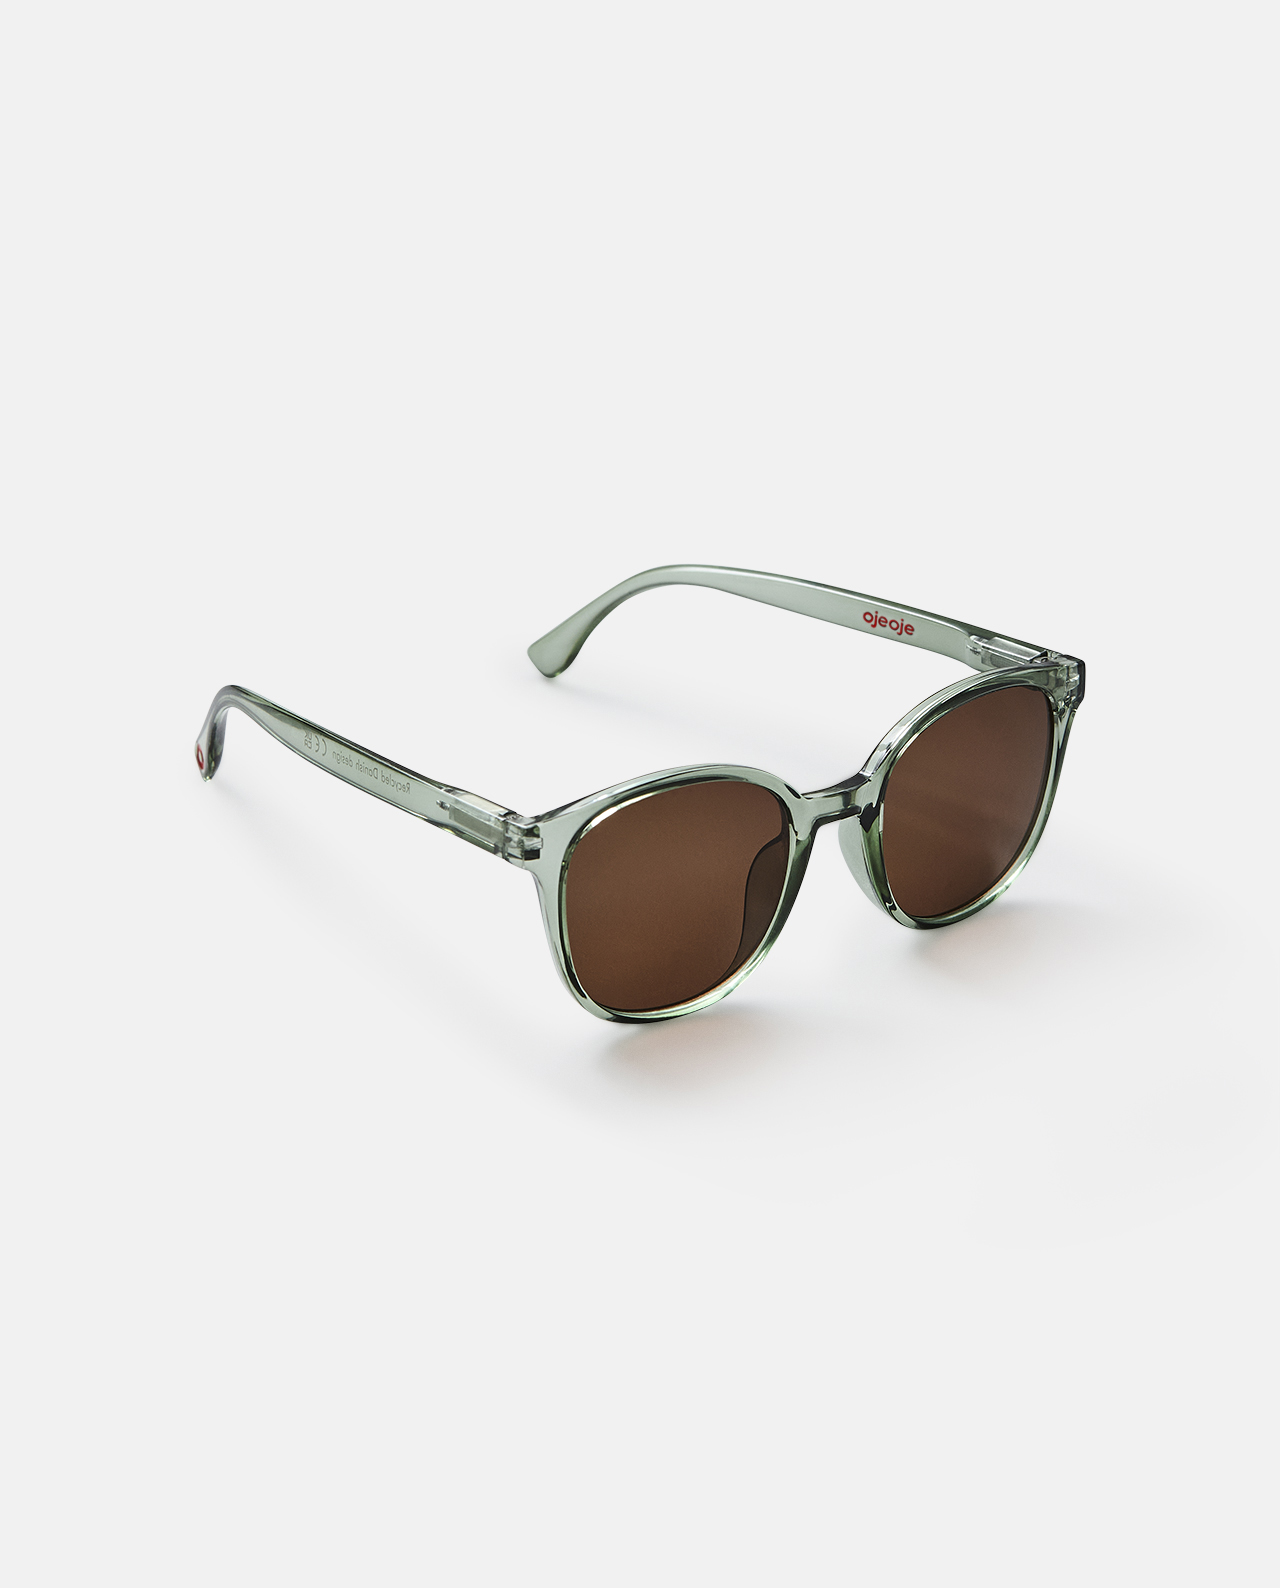 Solbriller fra OjeOje – Grøn (Model B)